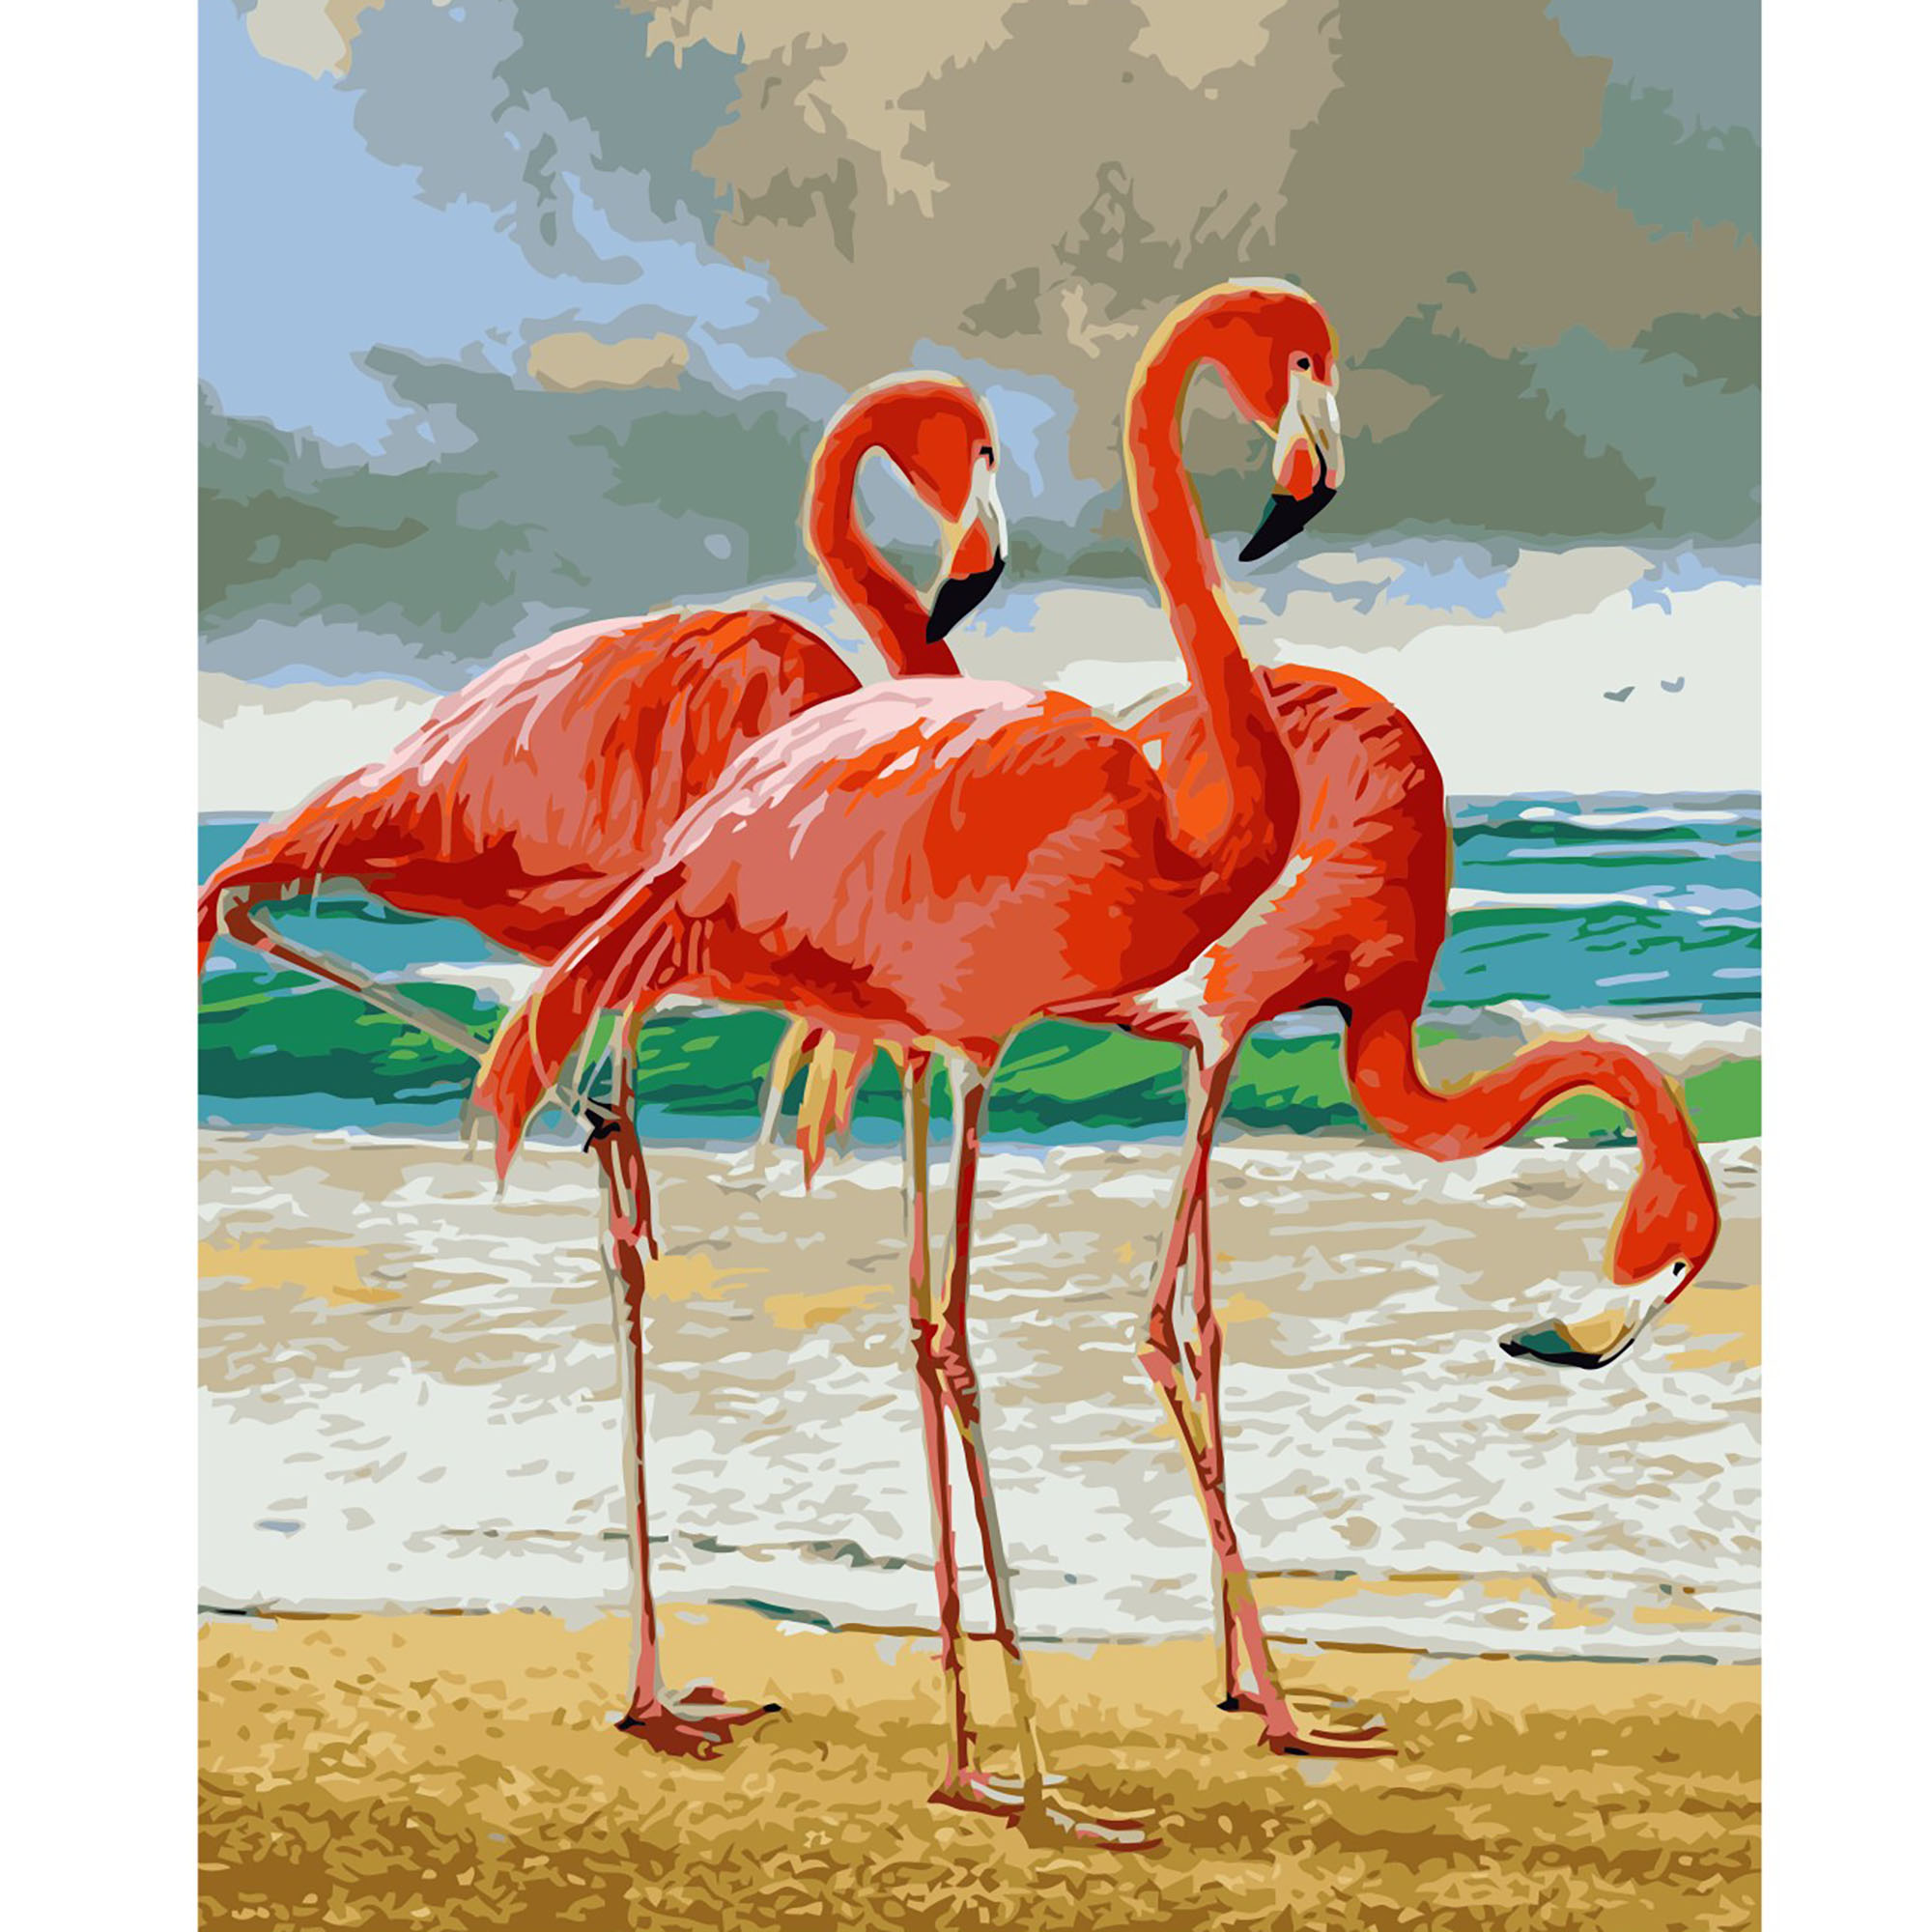 Malen nach Zahlen Strateg PREMIUM Drei Flamingos mit Lackgröße 40x50 cm VA-2508